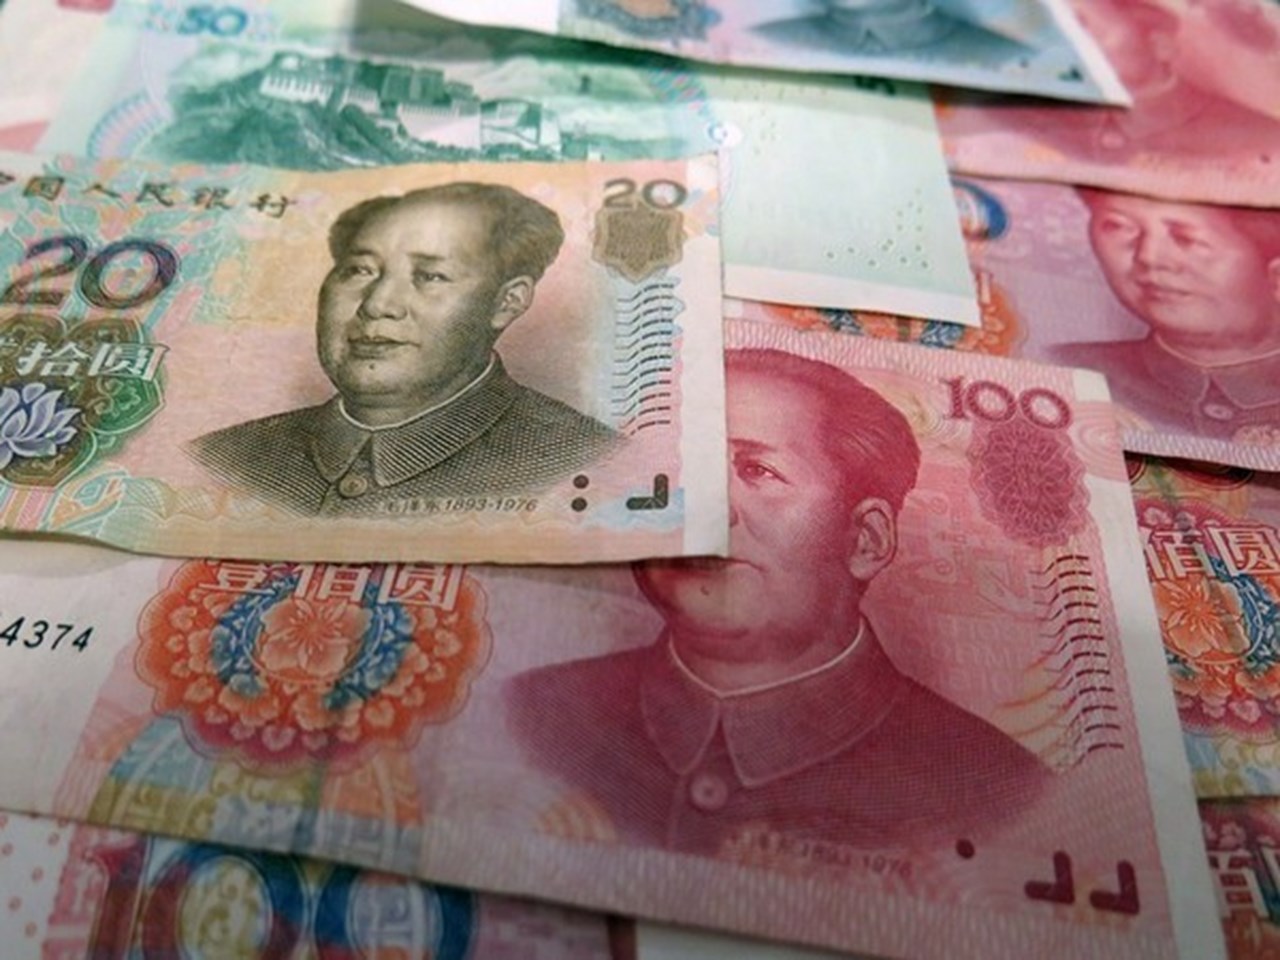 北京的支持未能给人留下深刻印象，中国股市和人民币下跌